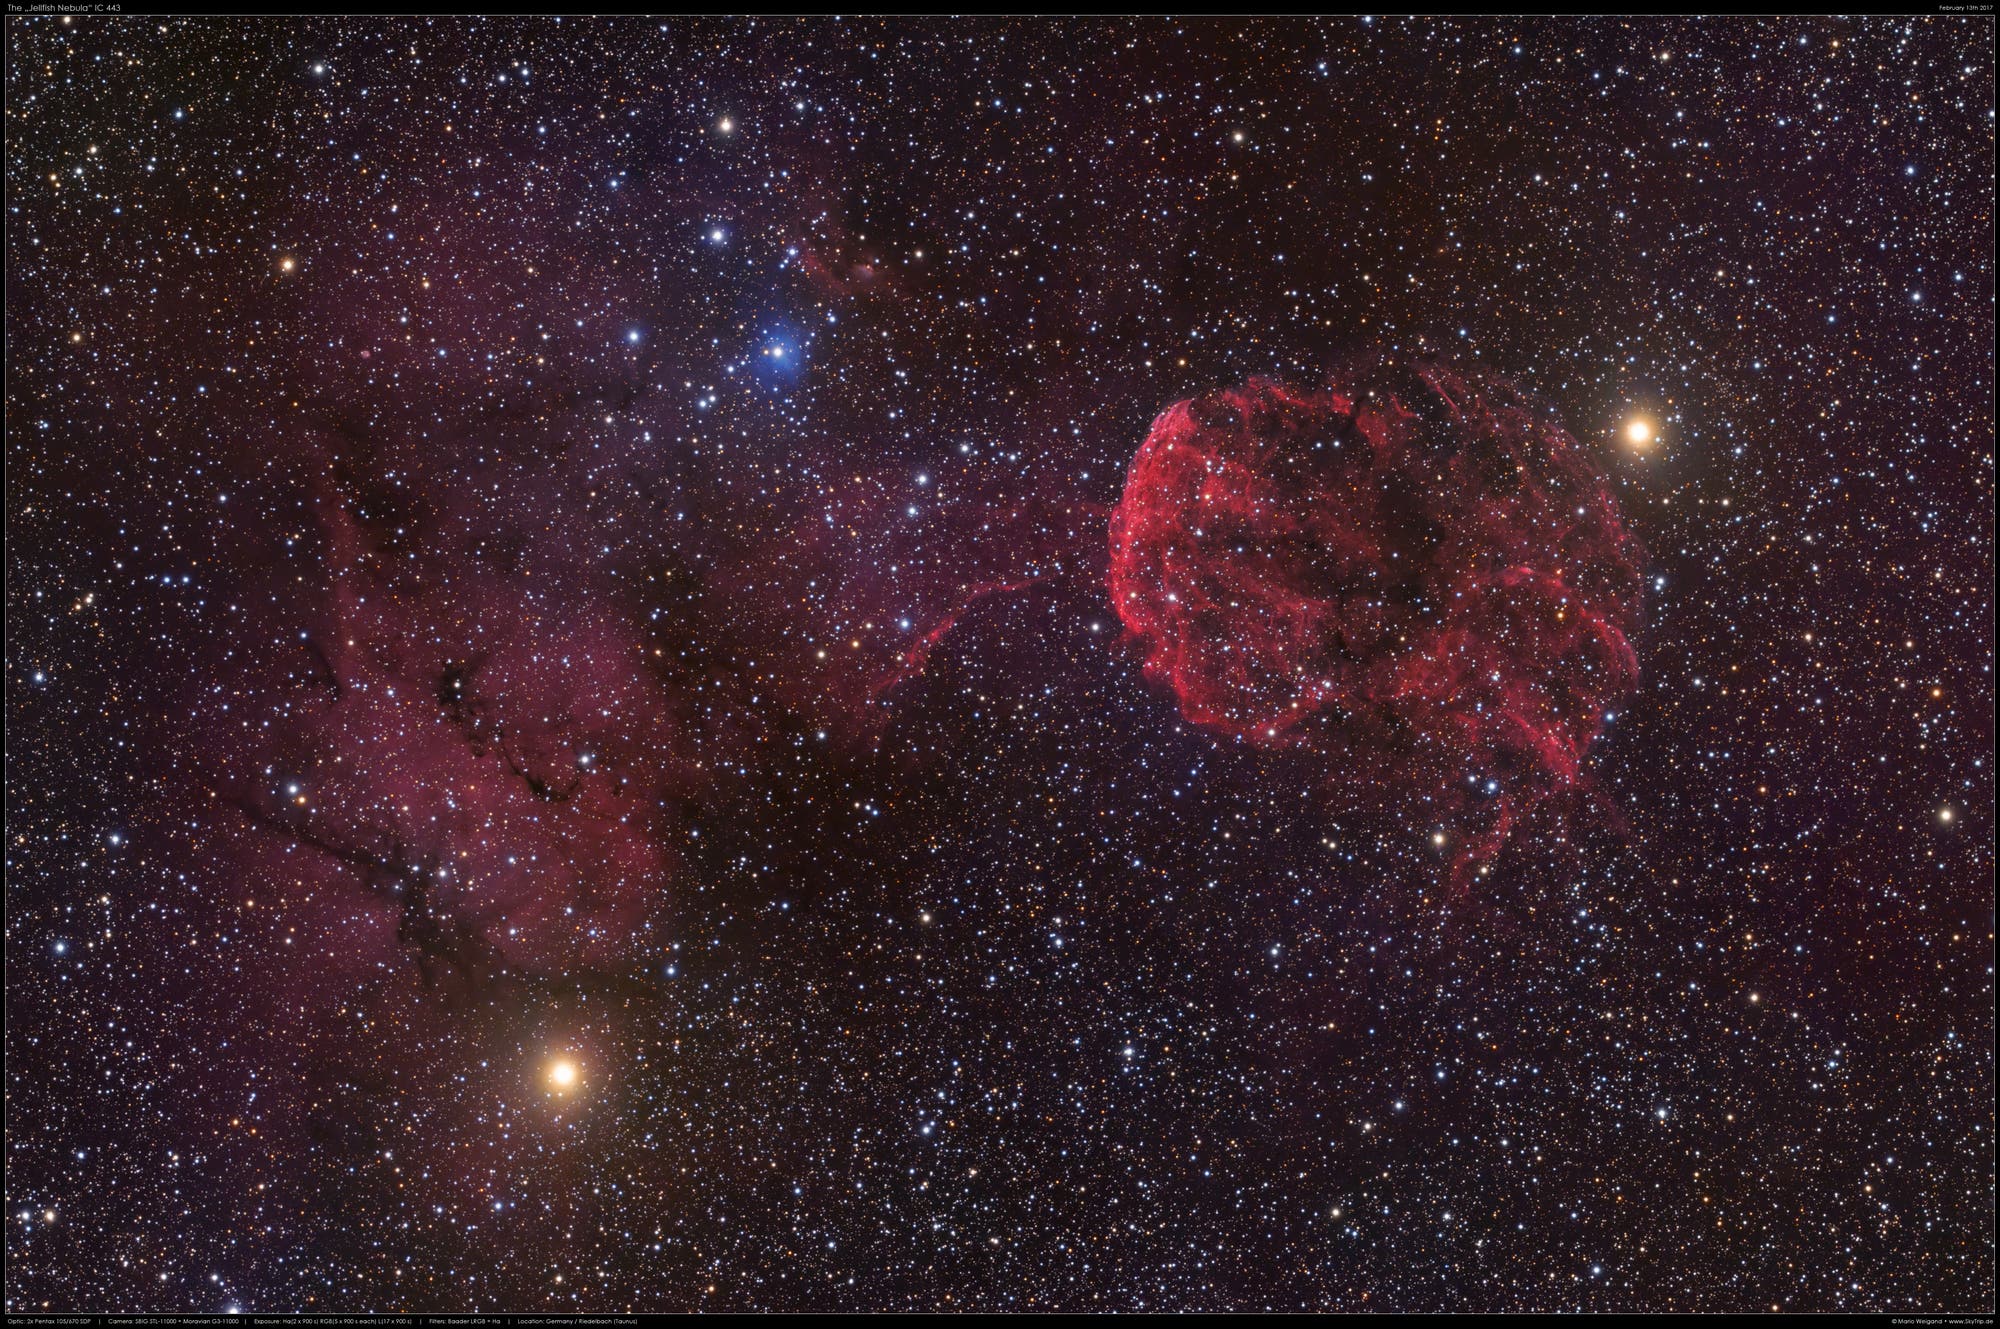 "Jellyfish Nebula" IC 443